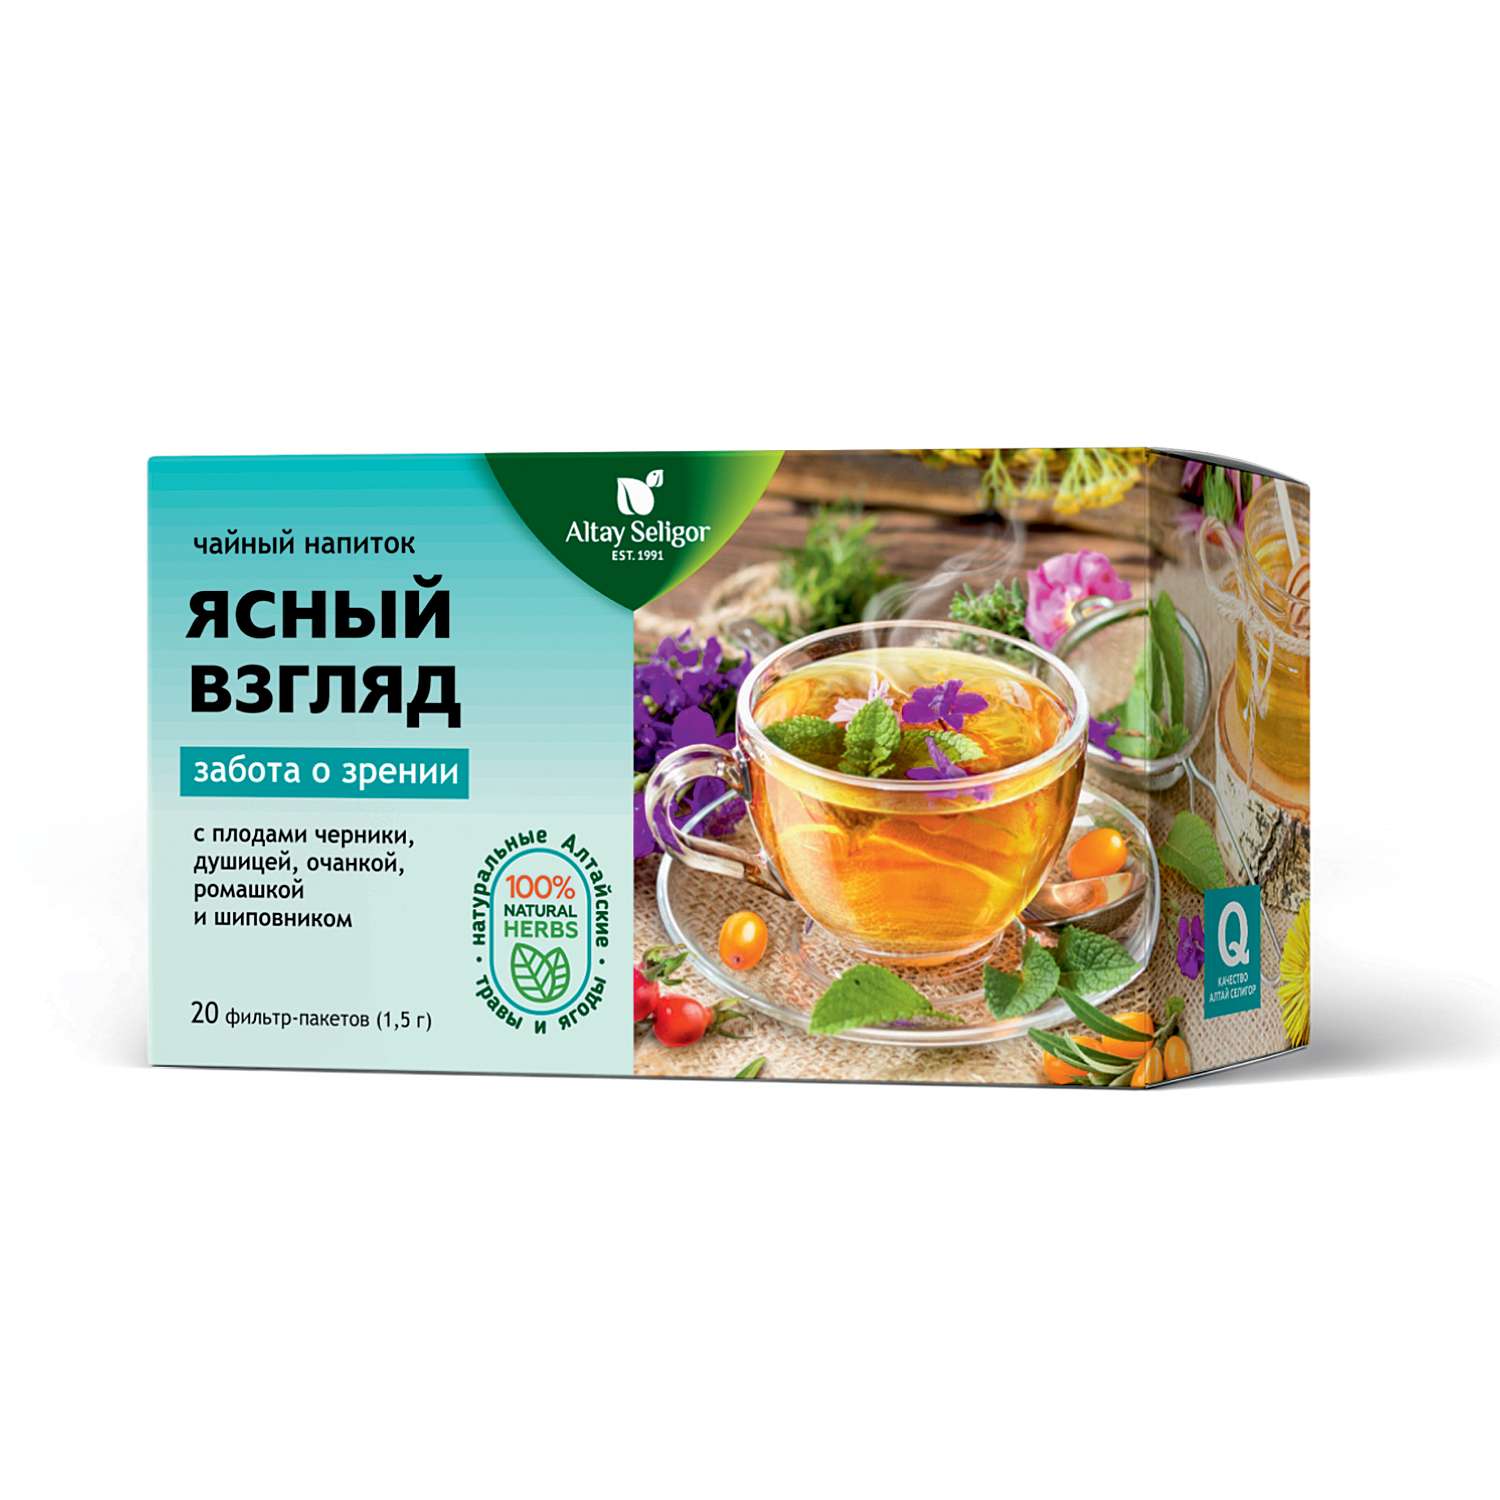 Напиток чайный Алтай-Селигор Ясный взгляд глазной 20пакетиков - фото 1